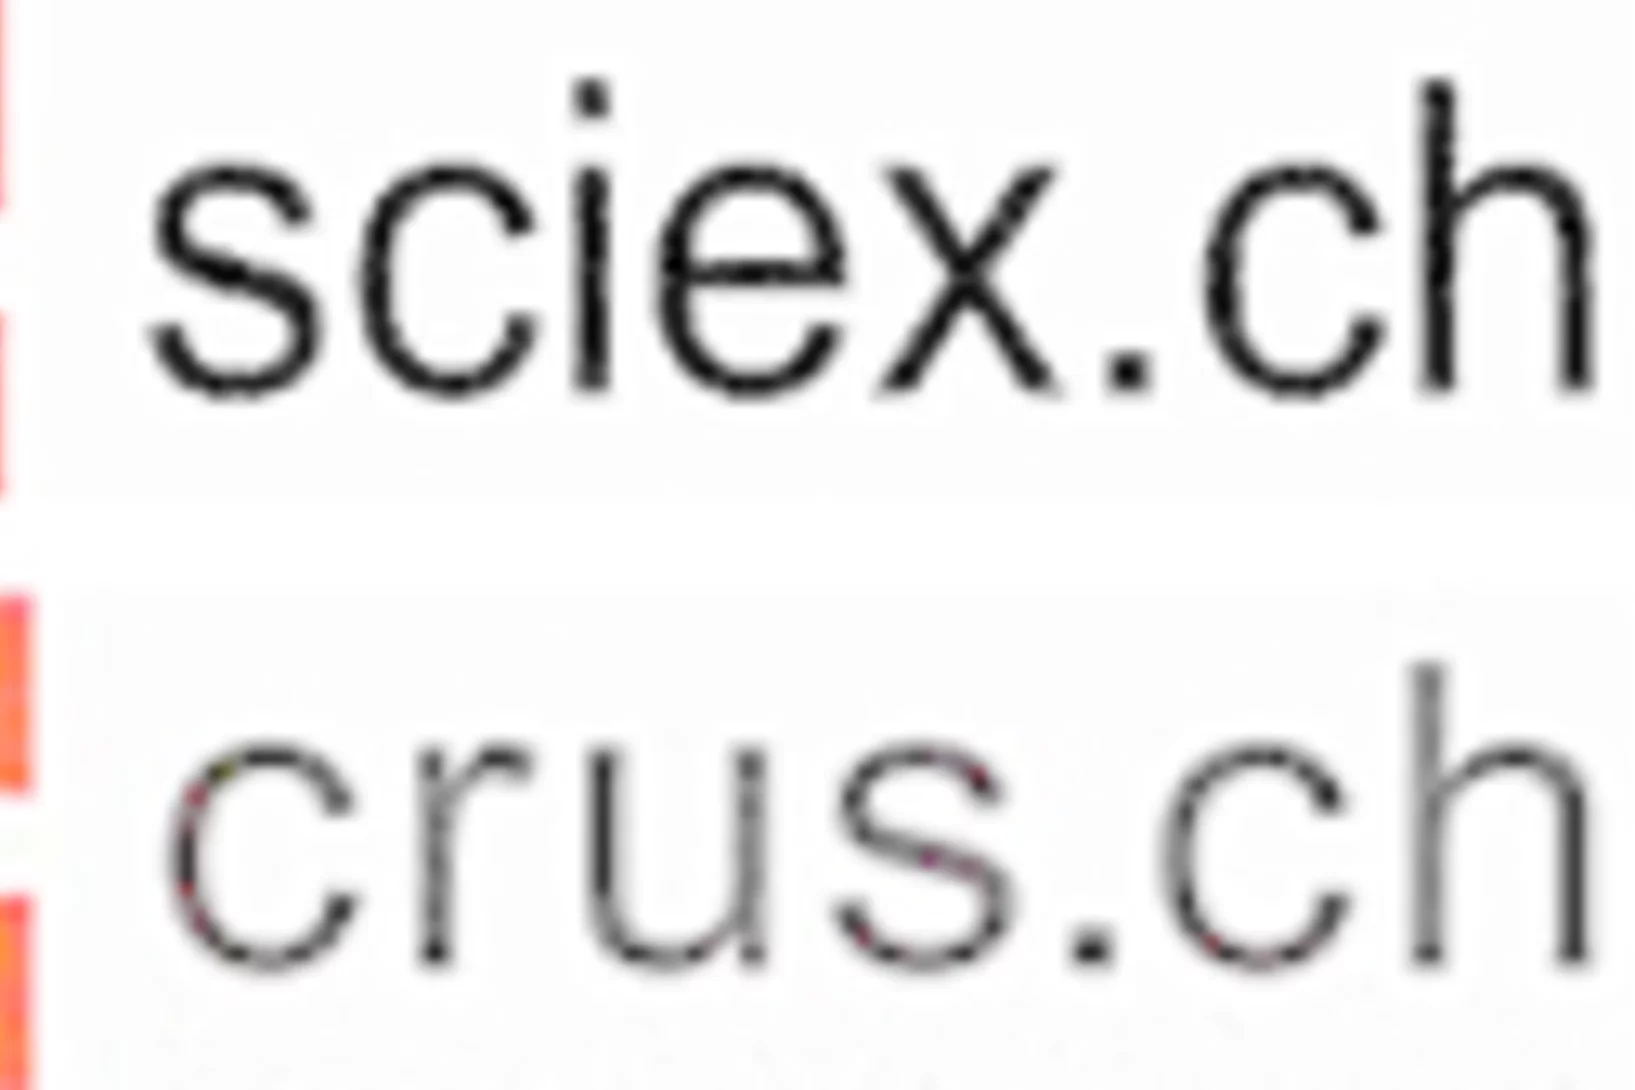 SciexCrus.jpg